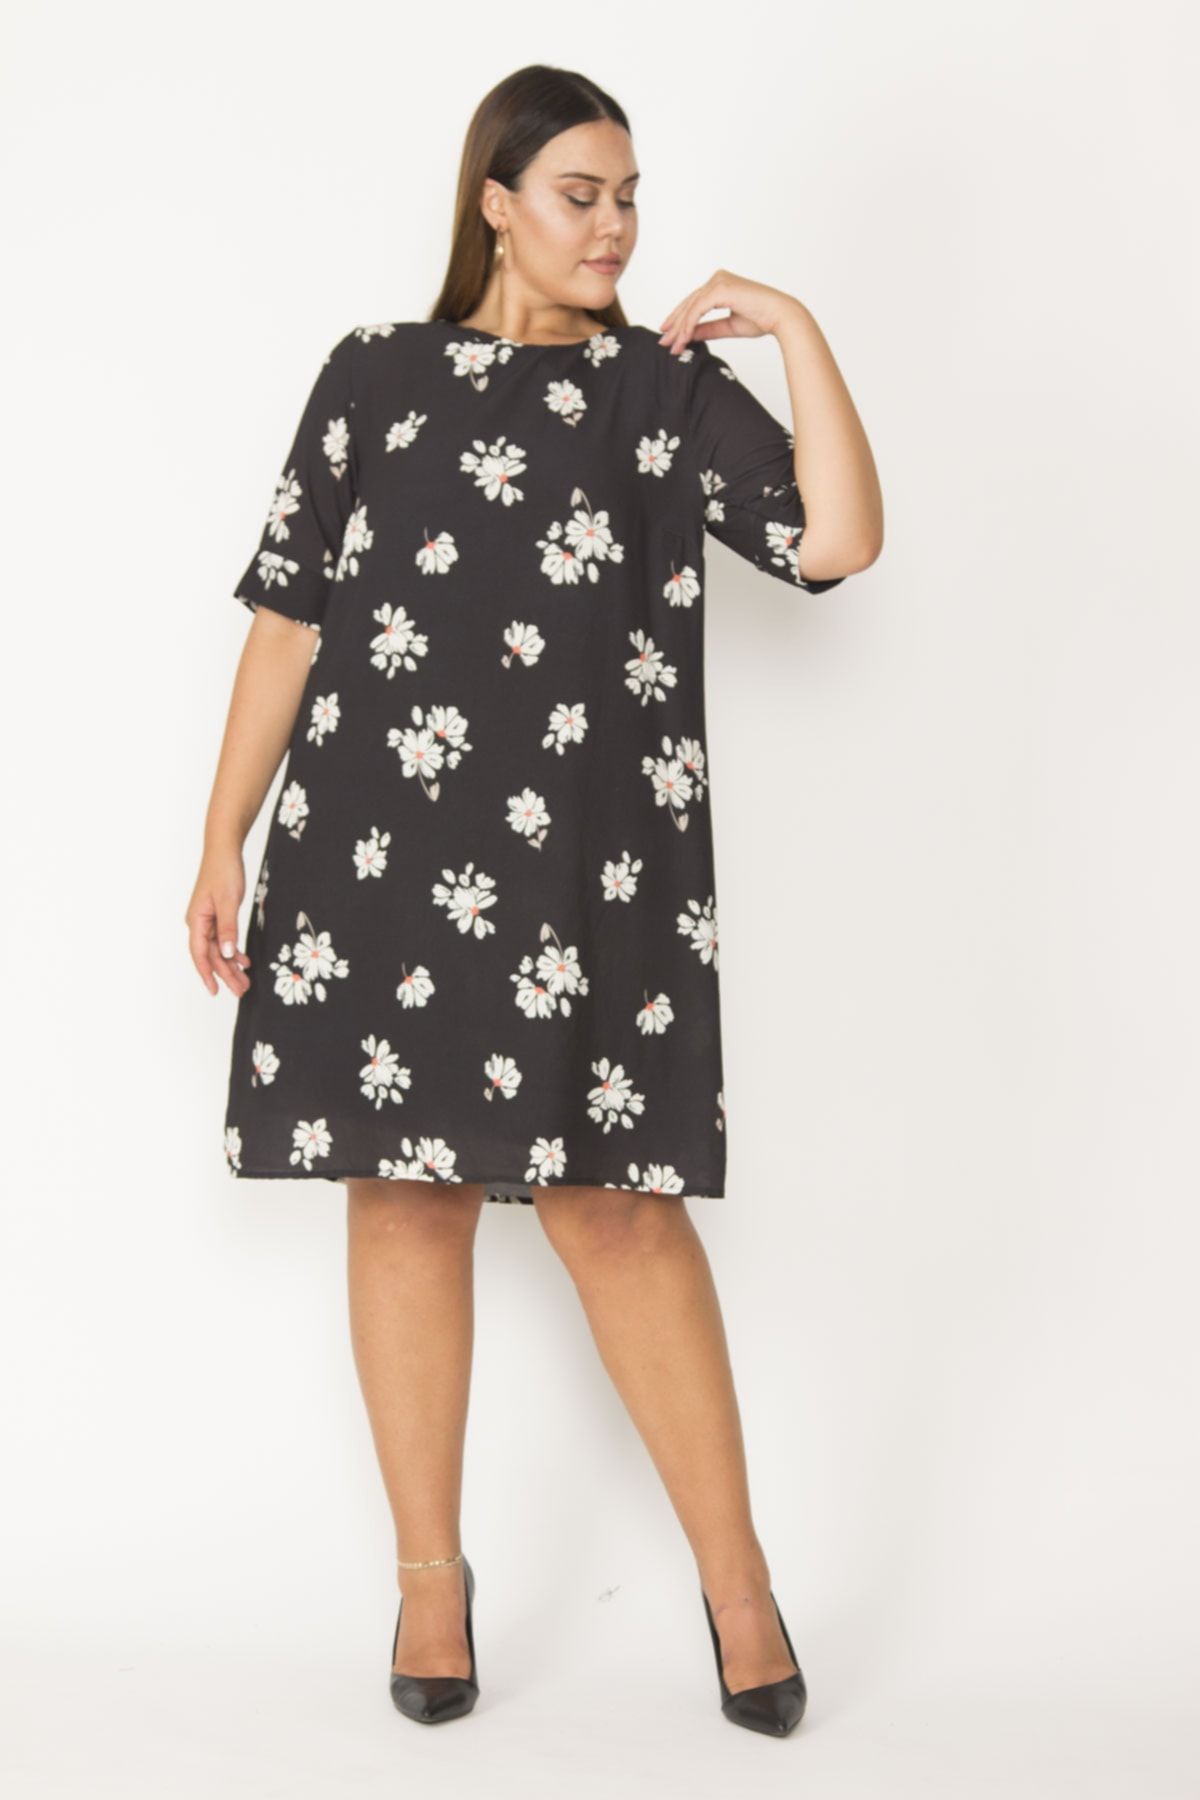 Şans Tekstil Kadın Siyah Astarlı Krep Kumaş Çiçek Desenli Elbise 26a27356